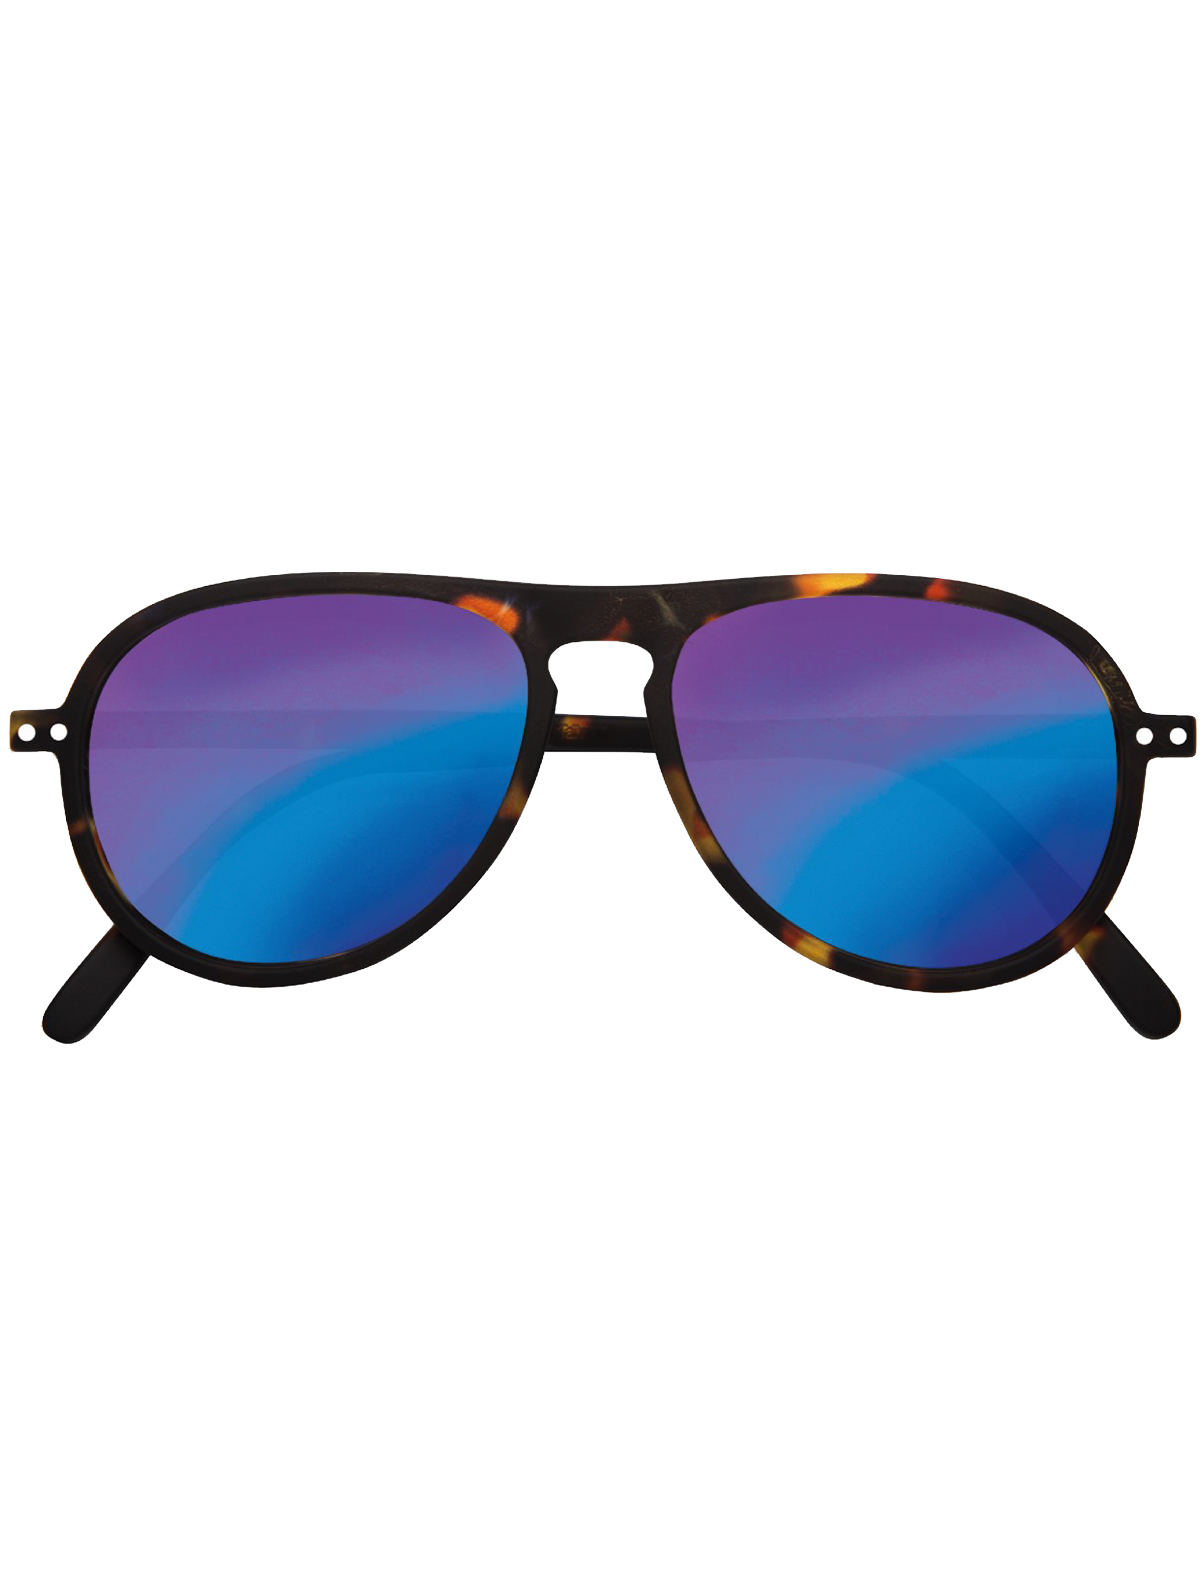 Купить очки izipizi. IZIPIZI очки солнцезащитные #l Blue Tortoise Mirror. Очки IZIPIZI #H Blue Tortoise (Blue Light). Очки +1 черепаховые. Очки черепаховые с голубыми линзами.